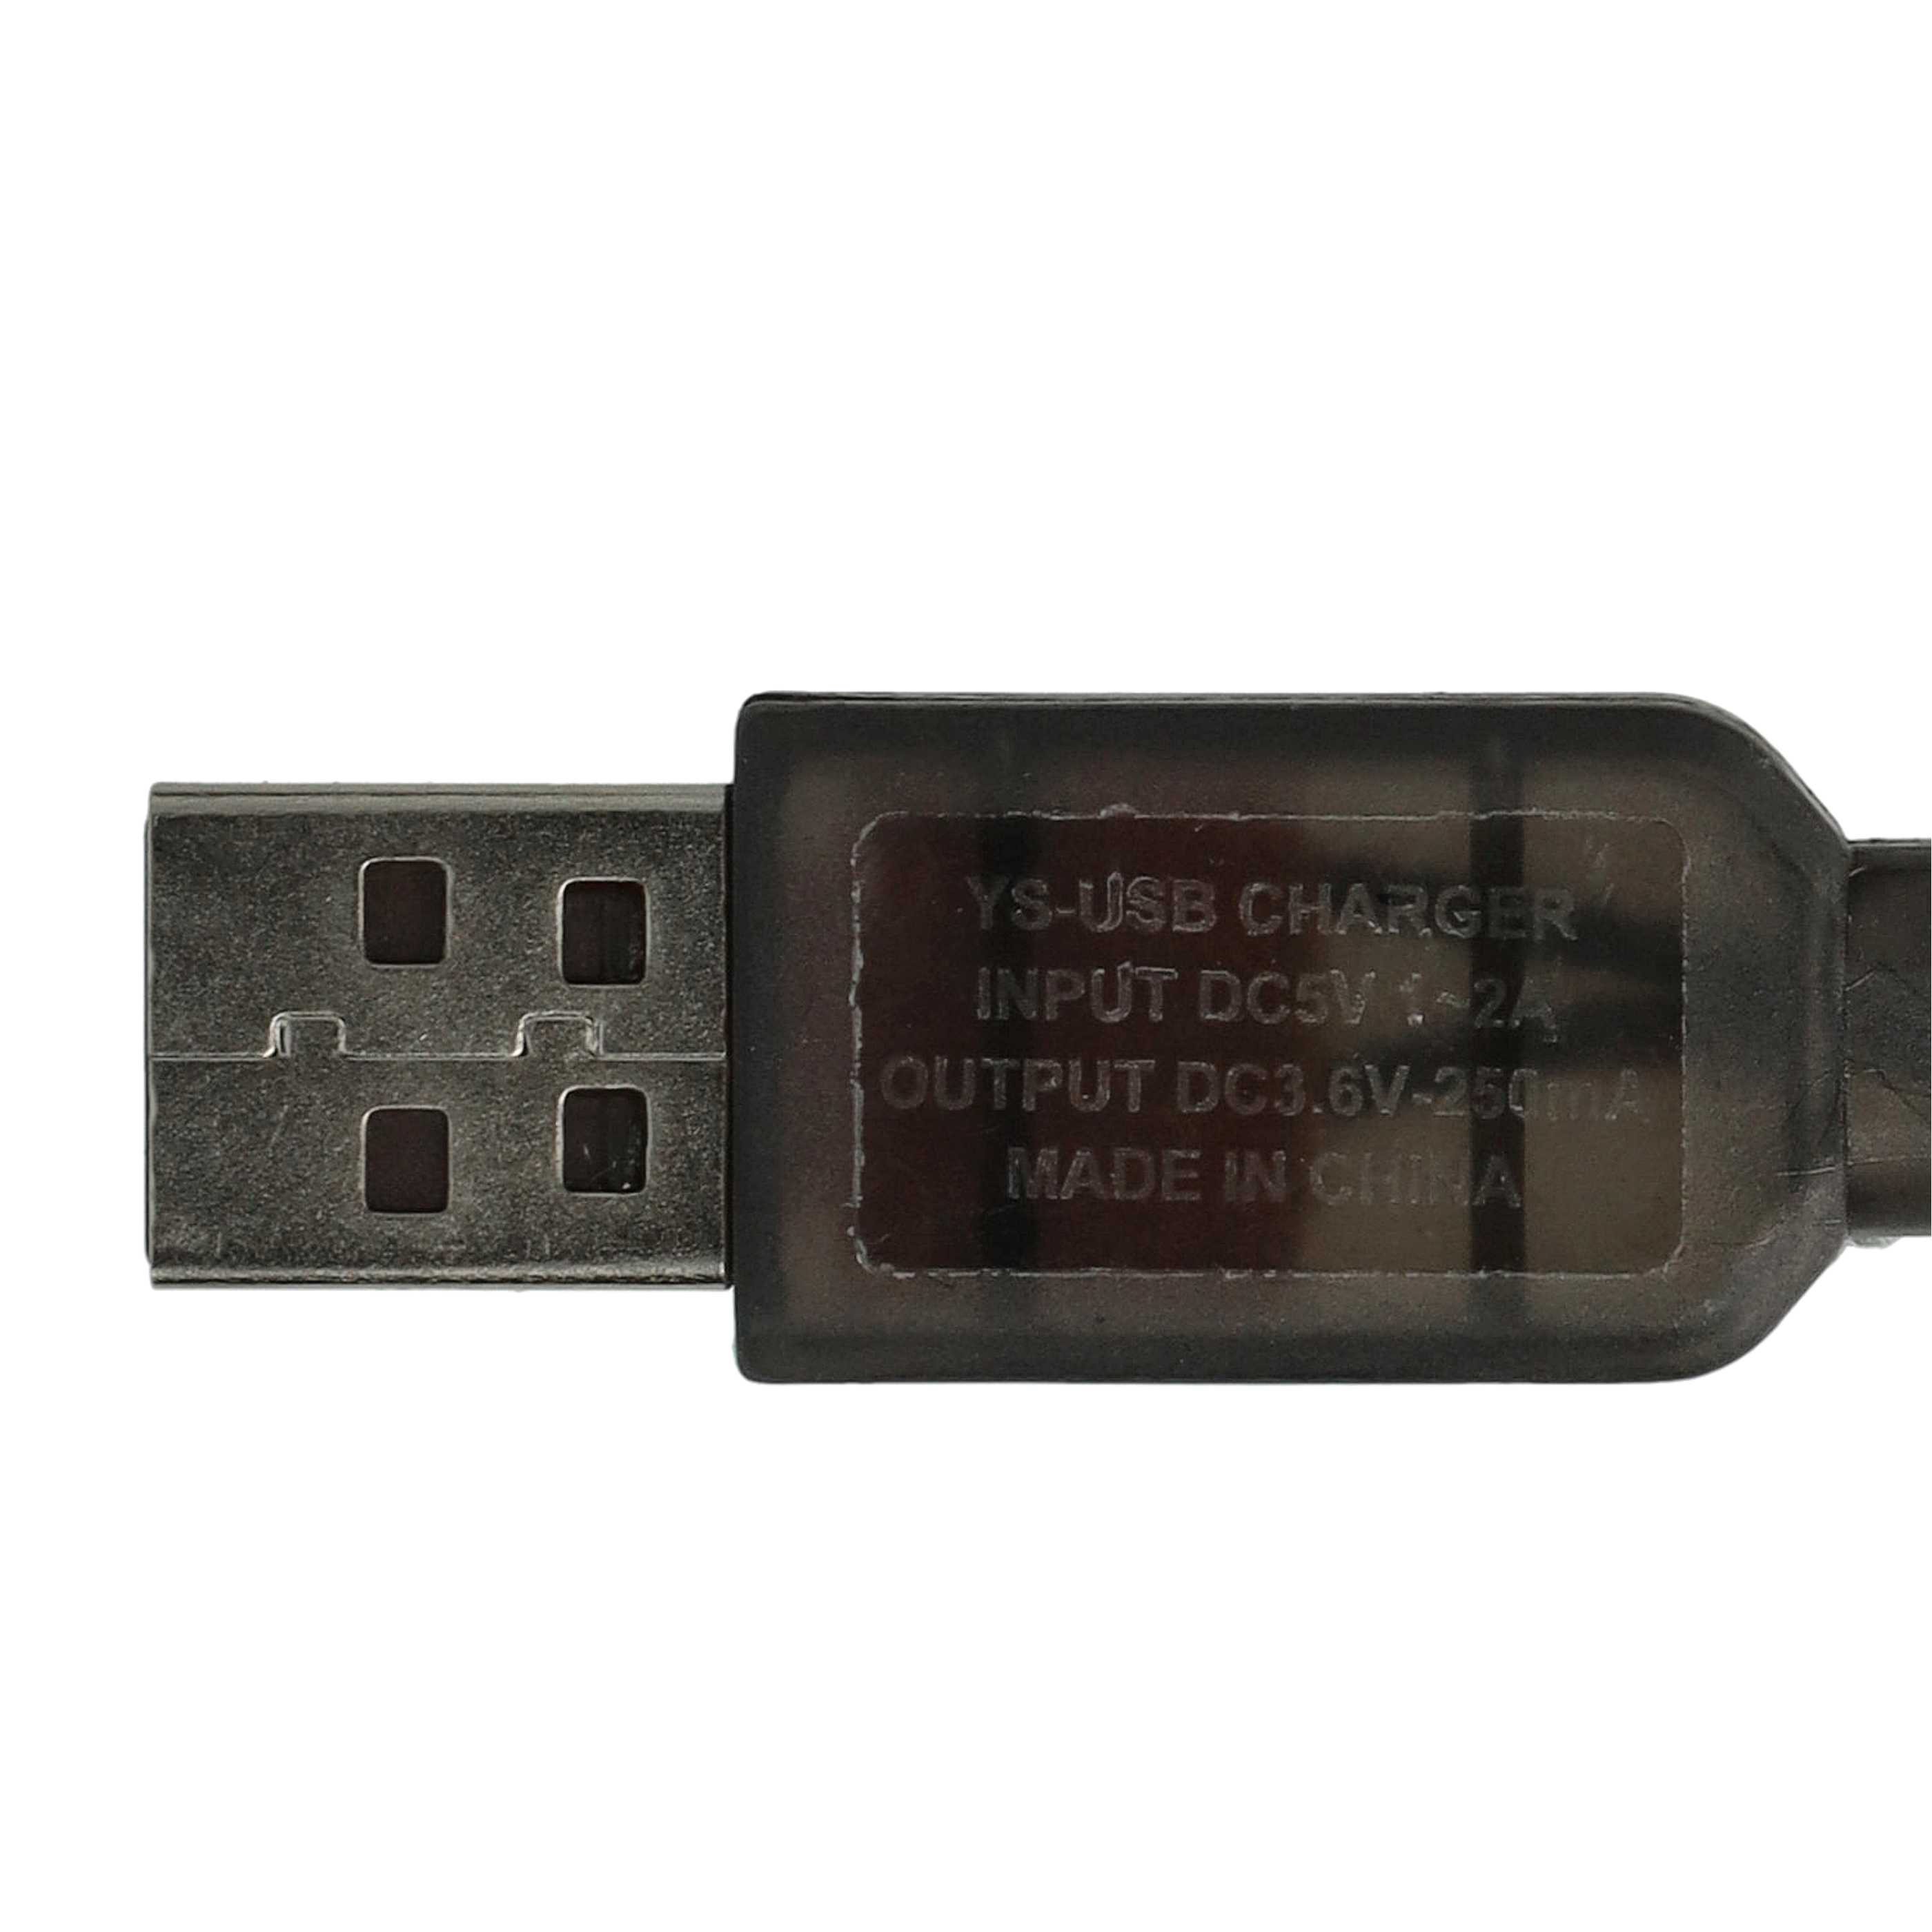 ChargeurUSB pour batterie SM-2P, modélisme RC - 60 cm 3,6 V